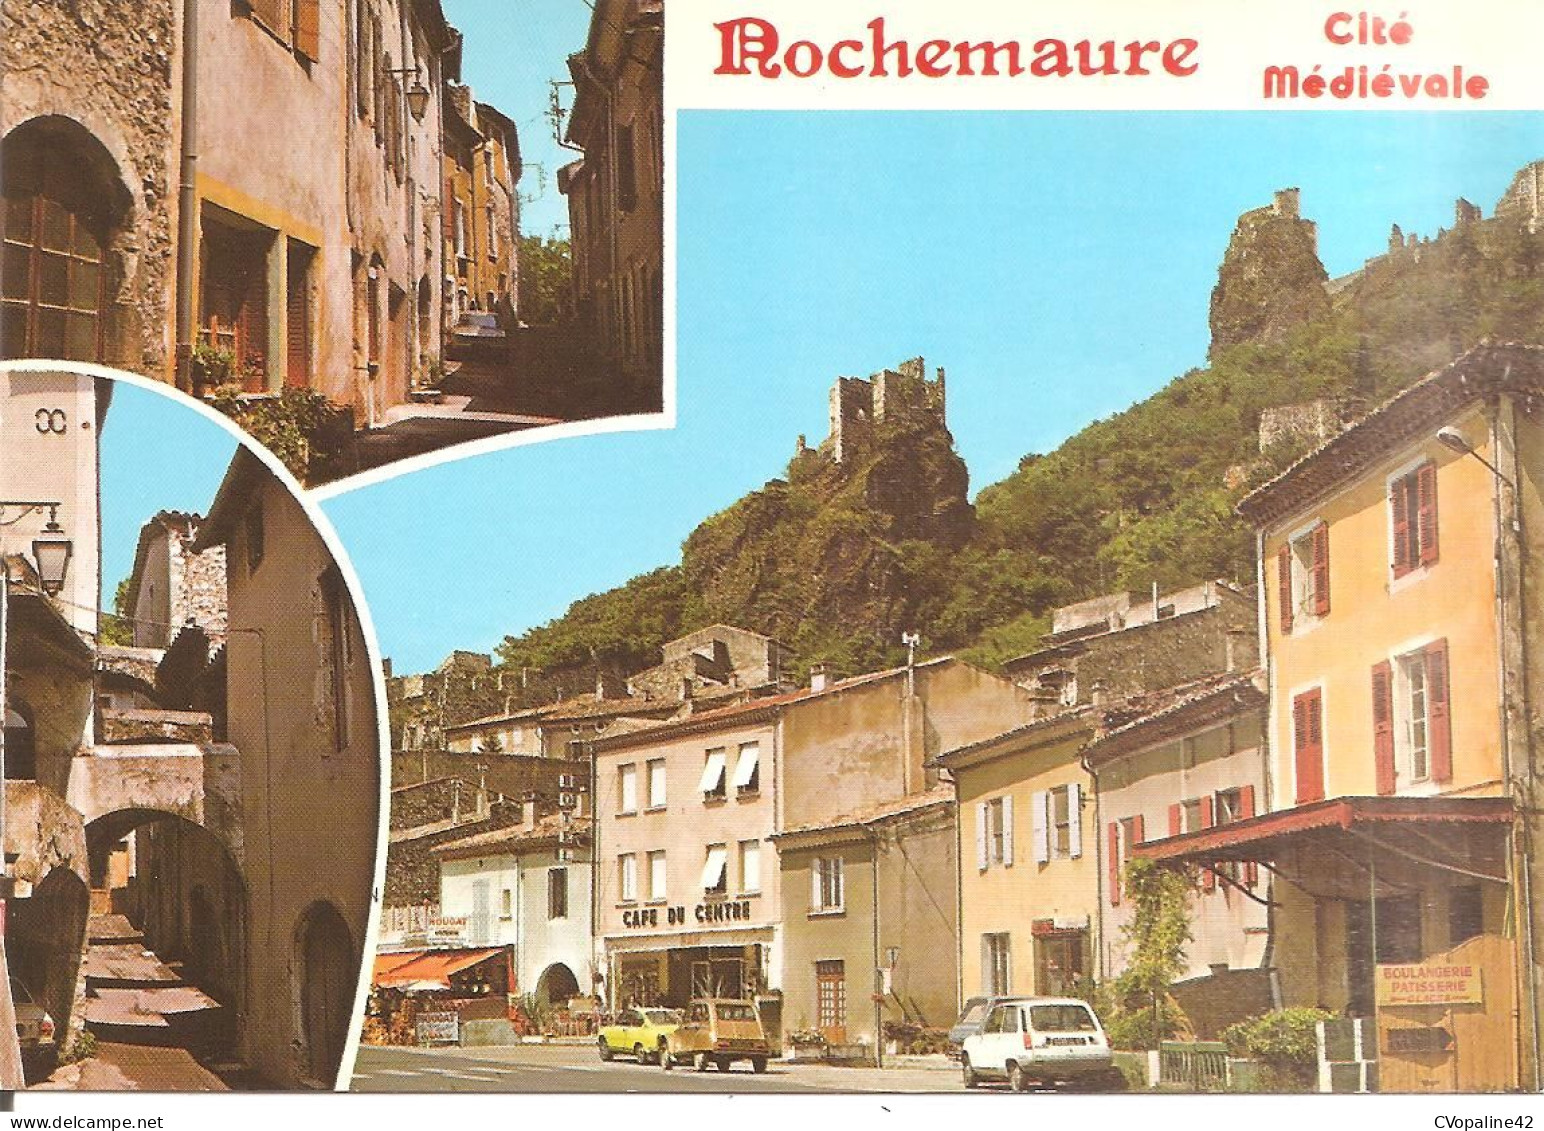 ROCHEMAURE (07) Cité Médiévale - 3 Vues  CPSM GF - Rochemaure